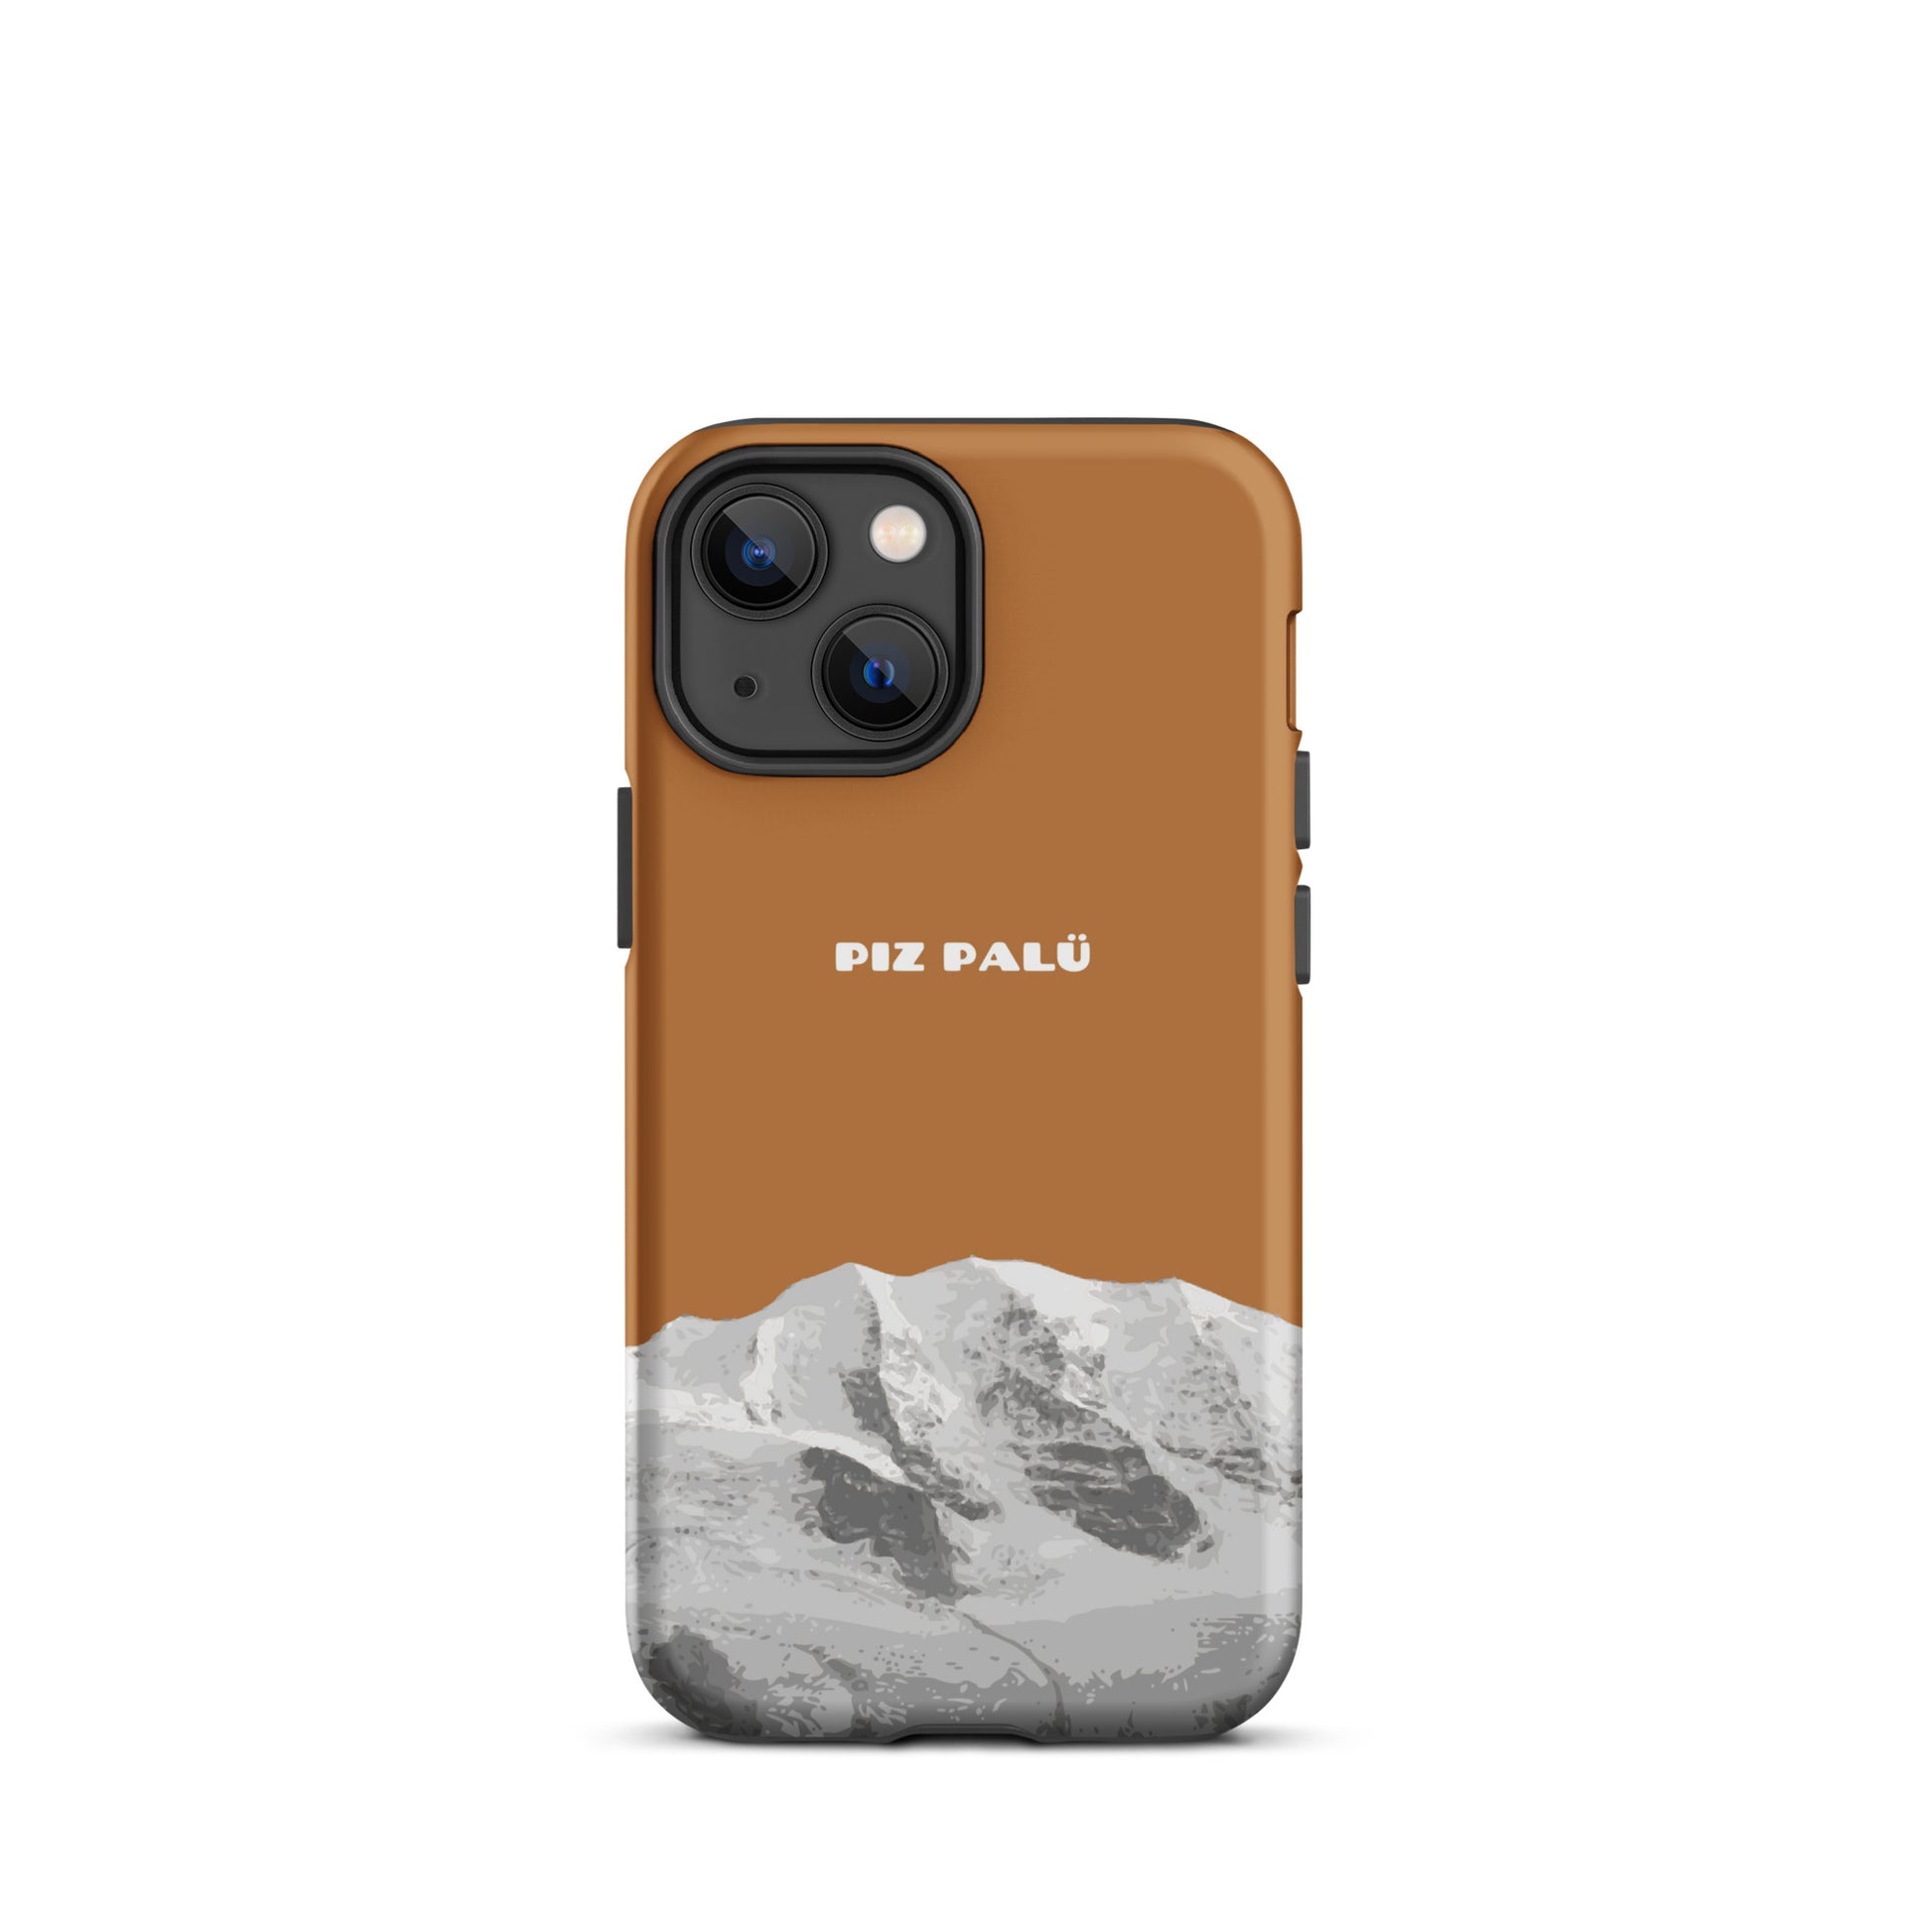 Hülle für das iPhone 13 Mini von Apple in der Farbe Kupfer, dass den Piz Palü in Graubünden zeigt.